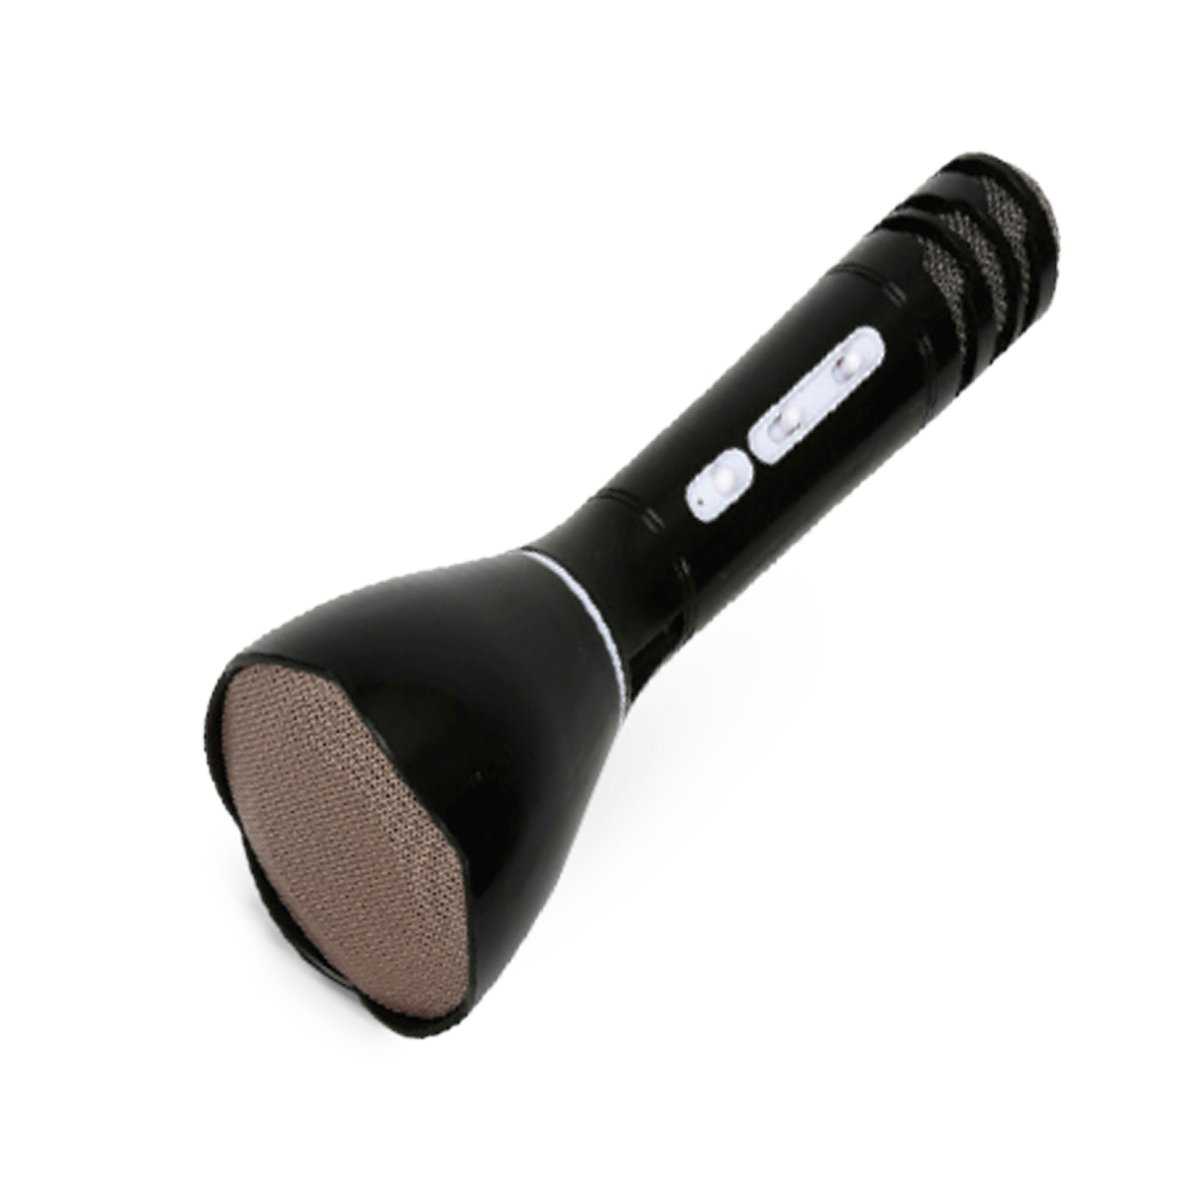 Universal Bluetooth MicrophoneWith Speaker UN-M01B Online at Best